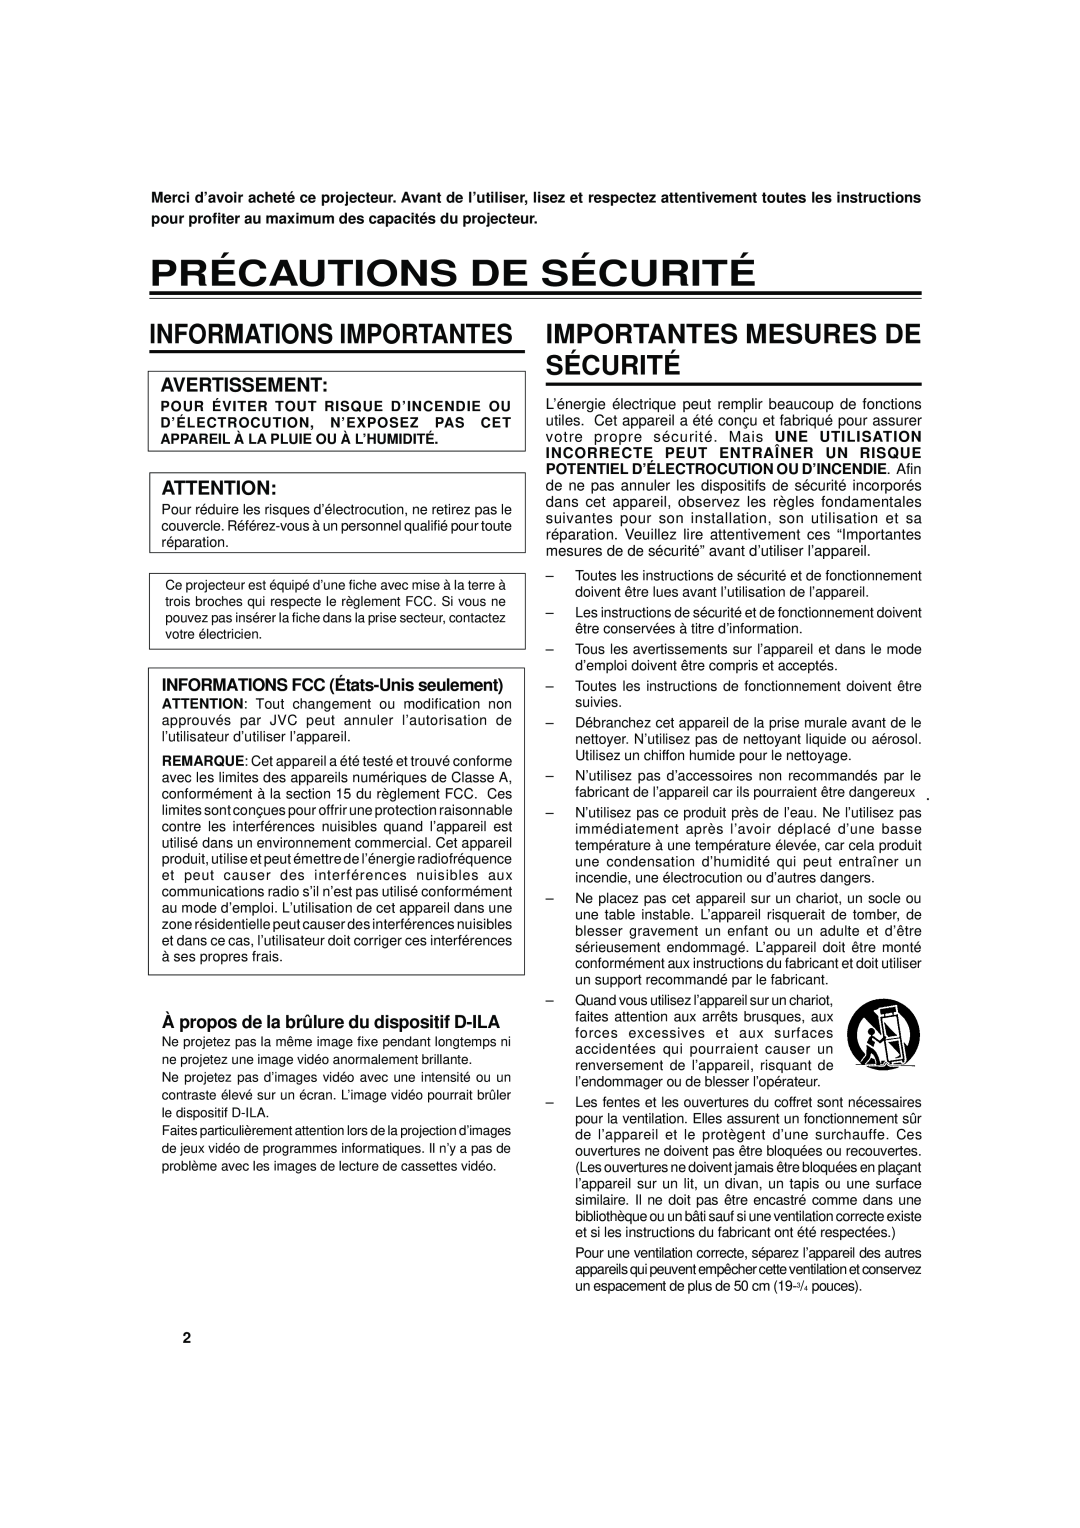 JVC DLA-S15U manual Précautions De Sécurité, Importantes Mesures De Sécurité, Informations Importantes, Avertissement 